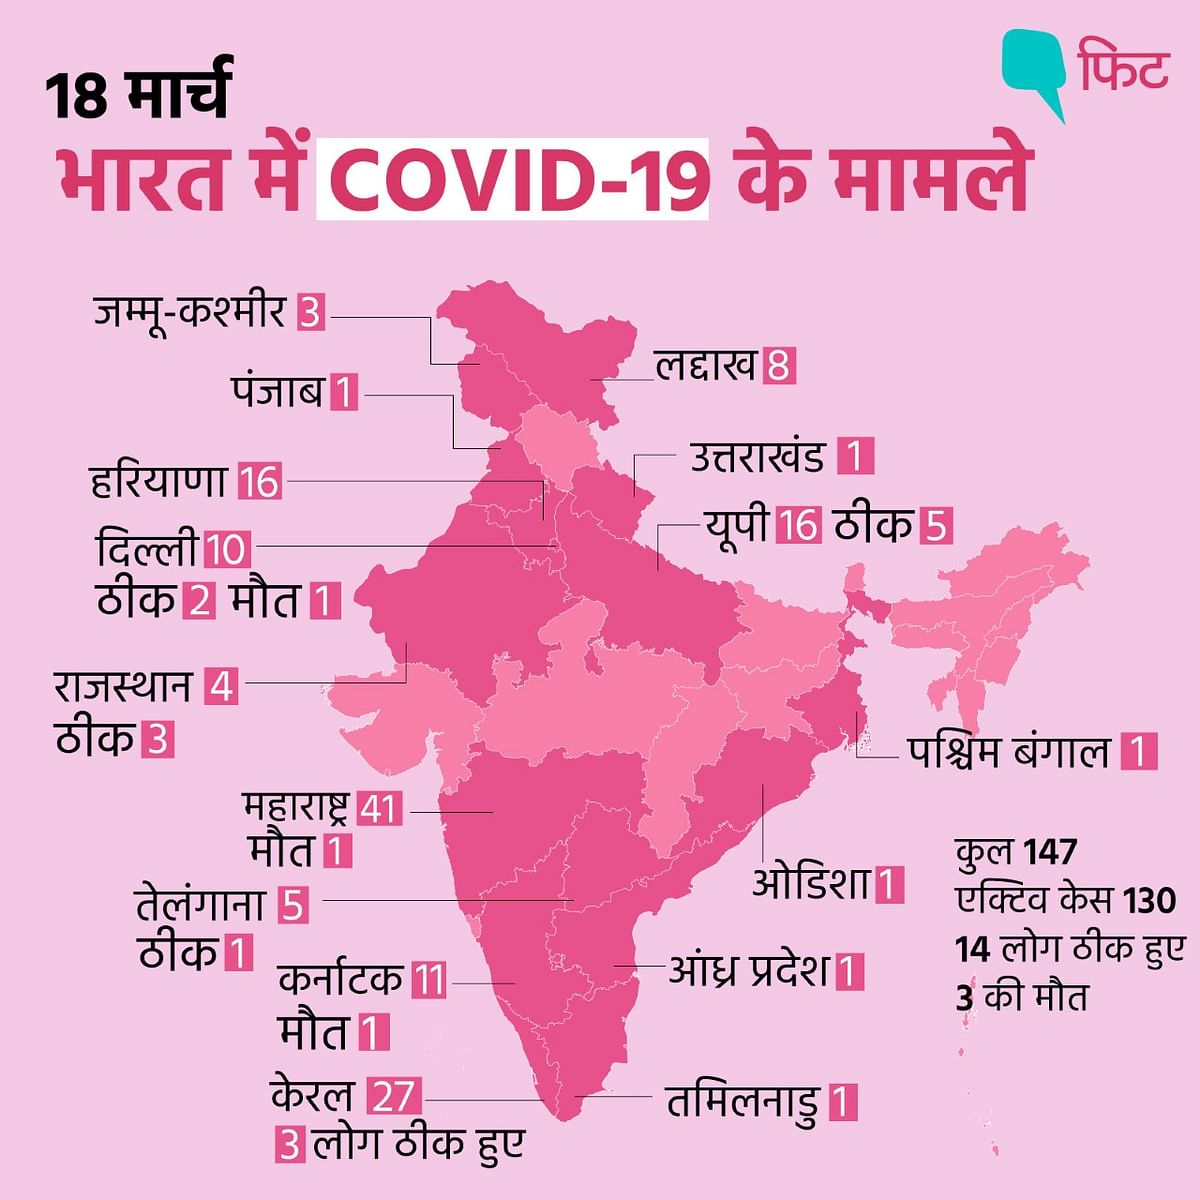 भारत में कोरोनावायरस के कंफर्म केसों की संख्या बढ़कर 147 हो गई है.